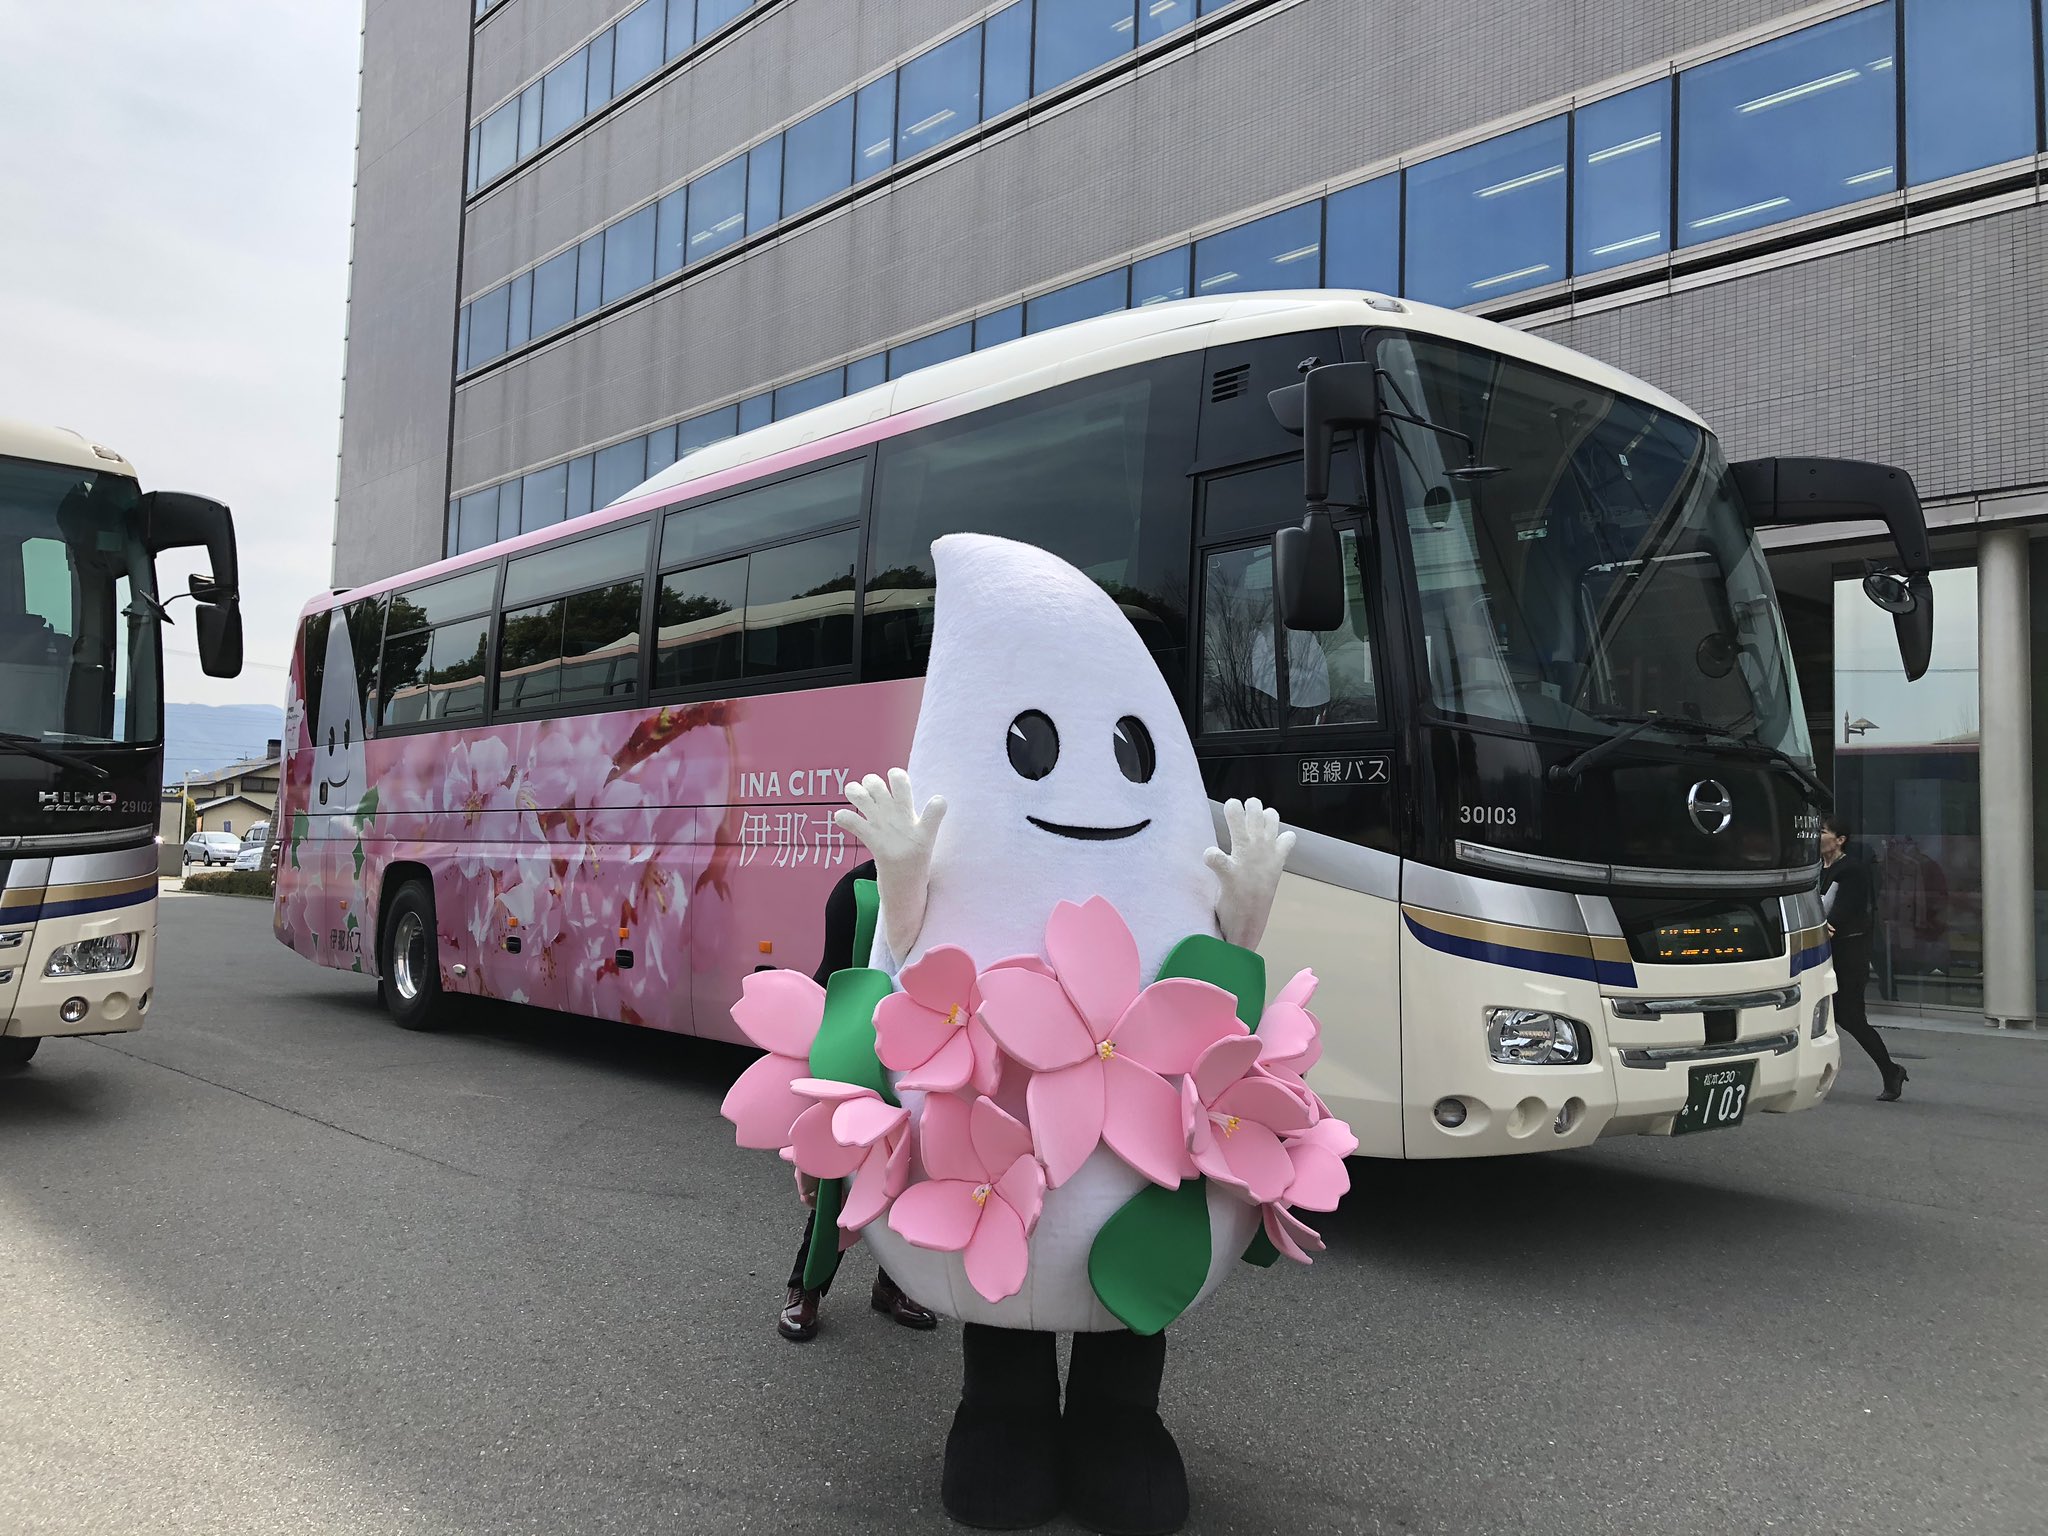 伊那市観光協会 新宿 伊那市をつなぐ 高速バスに 新しいラッピングバスが走ります 伊那市の花 桜と バラをモチーフにした目を引くデザイン キャラクターのイーナちゃんも大きく描かれています 明日から新宿飯田線で通常運行されます T Co